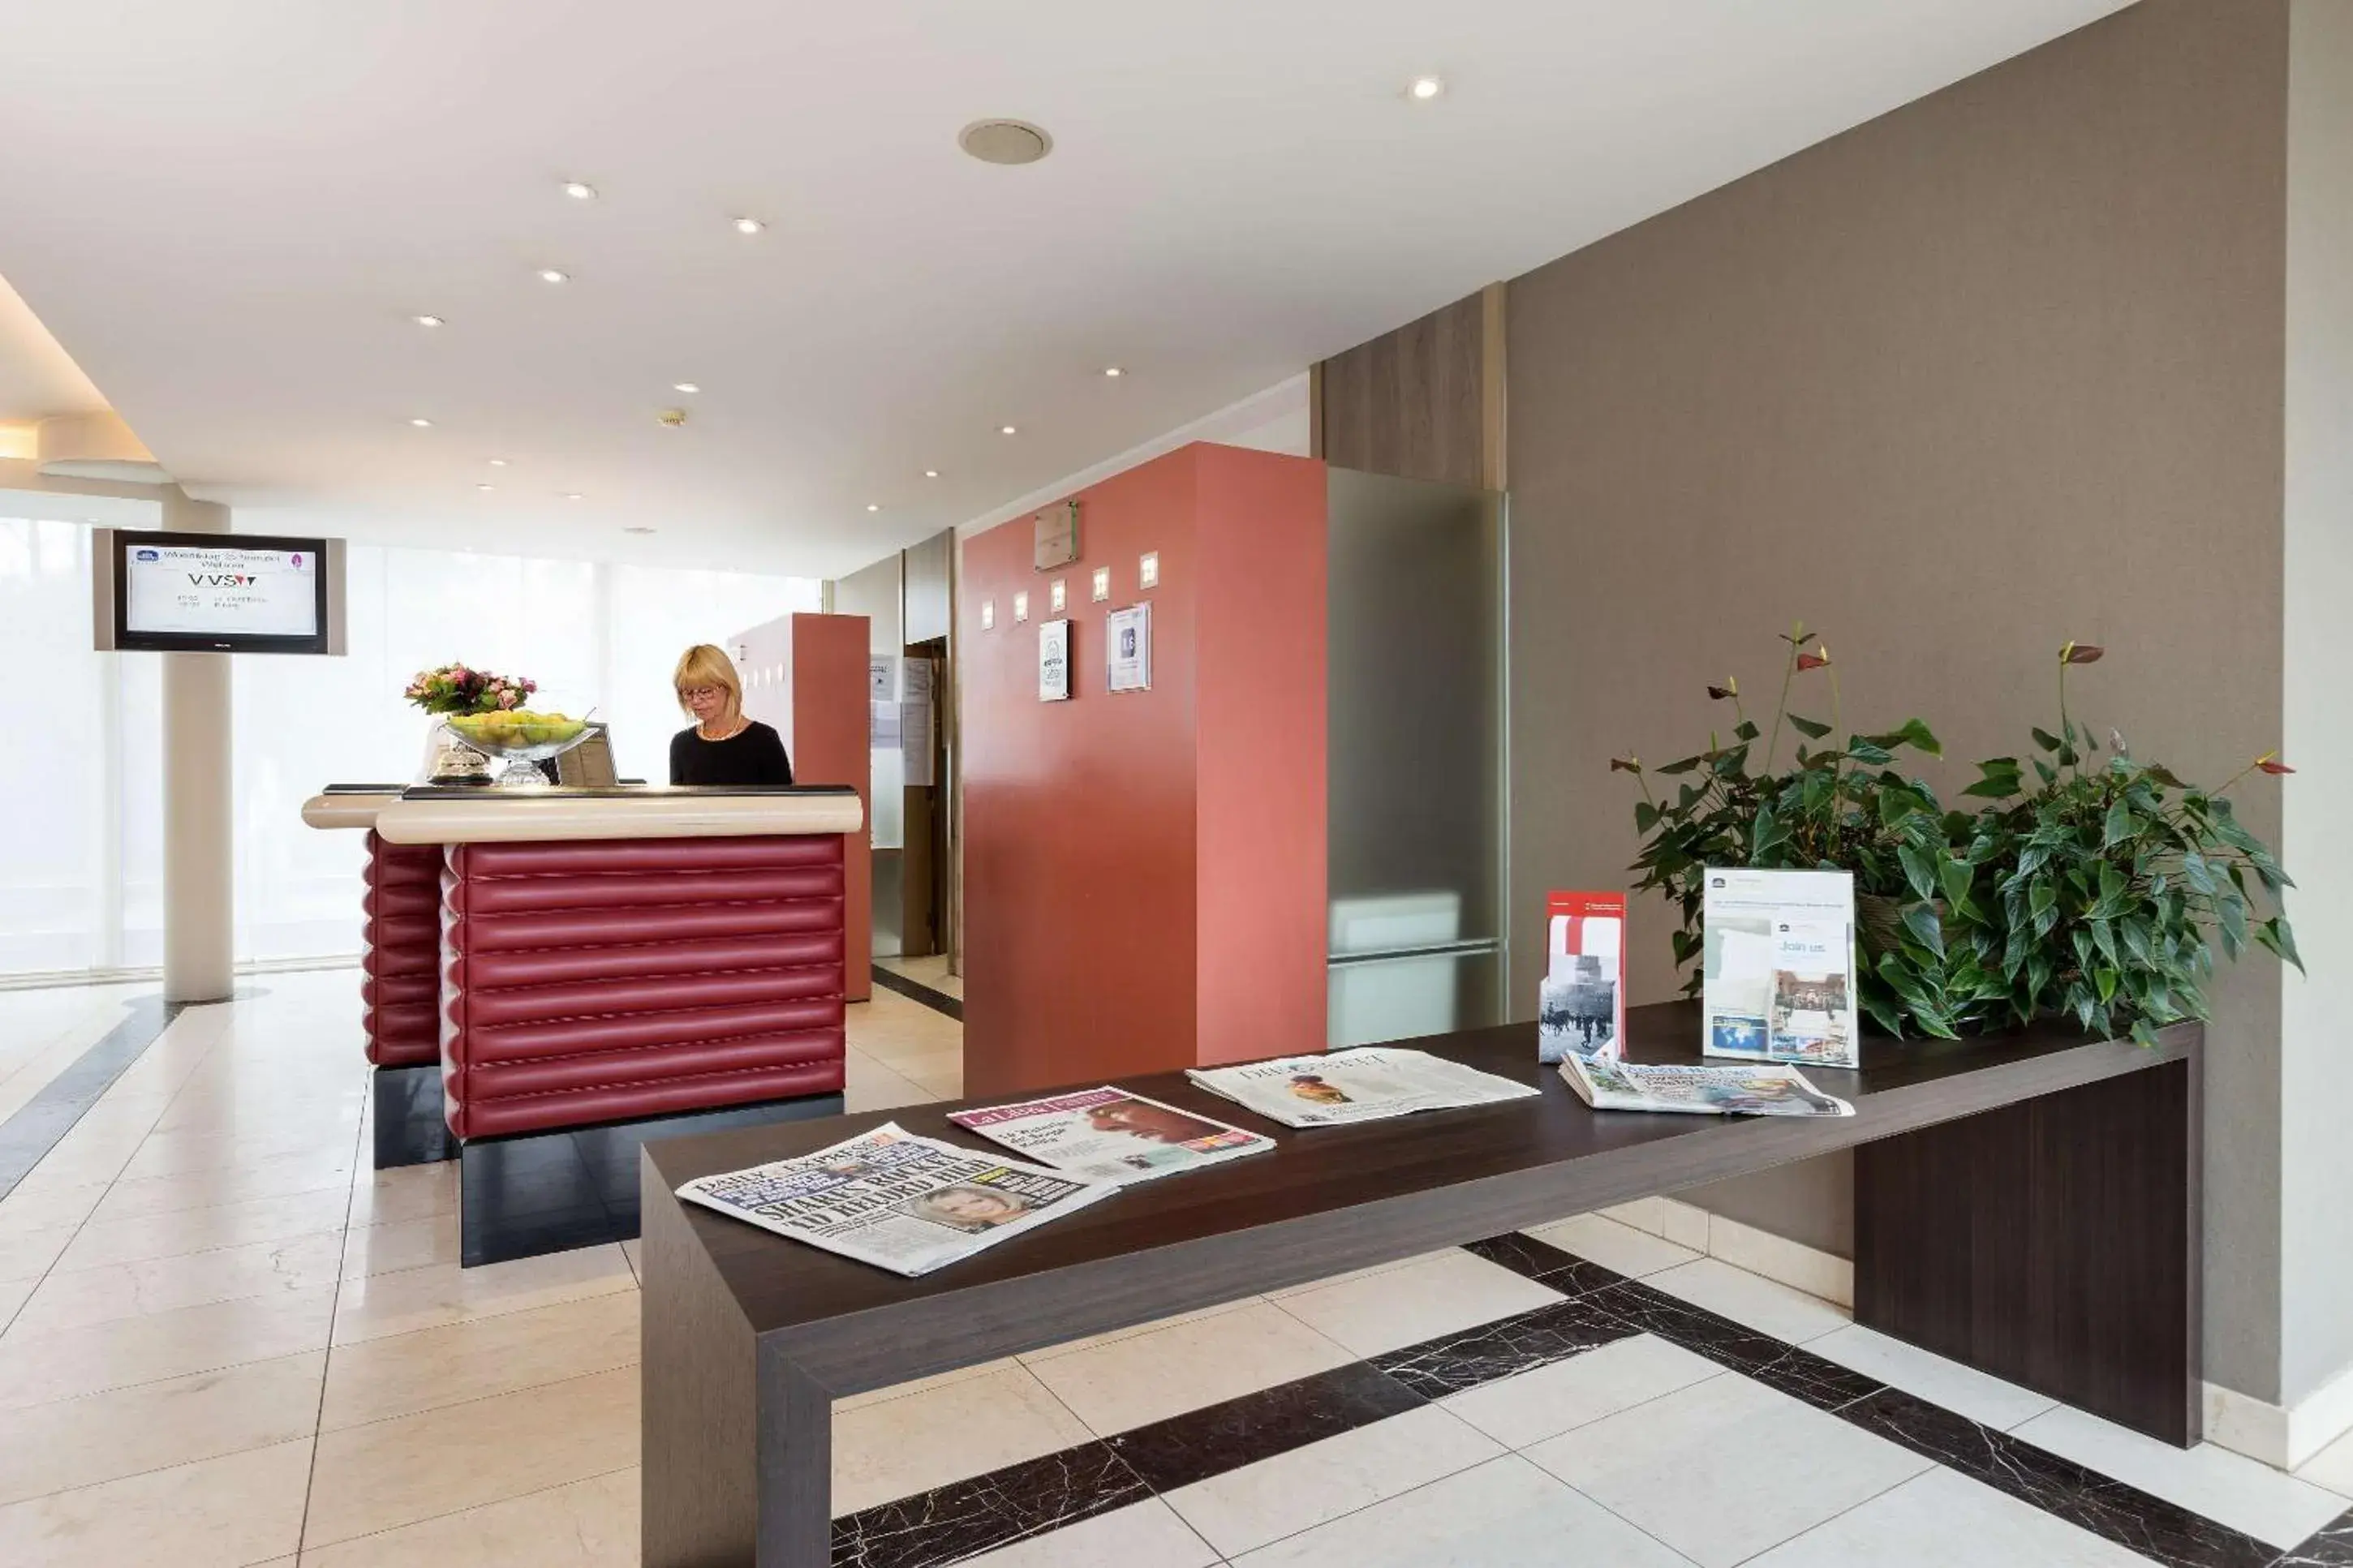 Lobby or reception, Lobby/Reception in Hotel Restaurant Weinebrugge